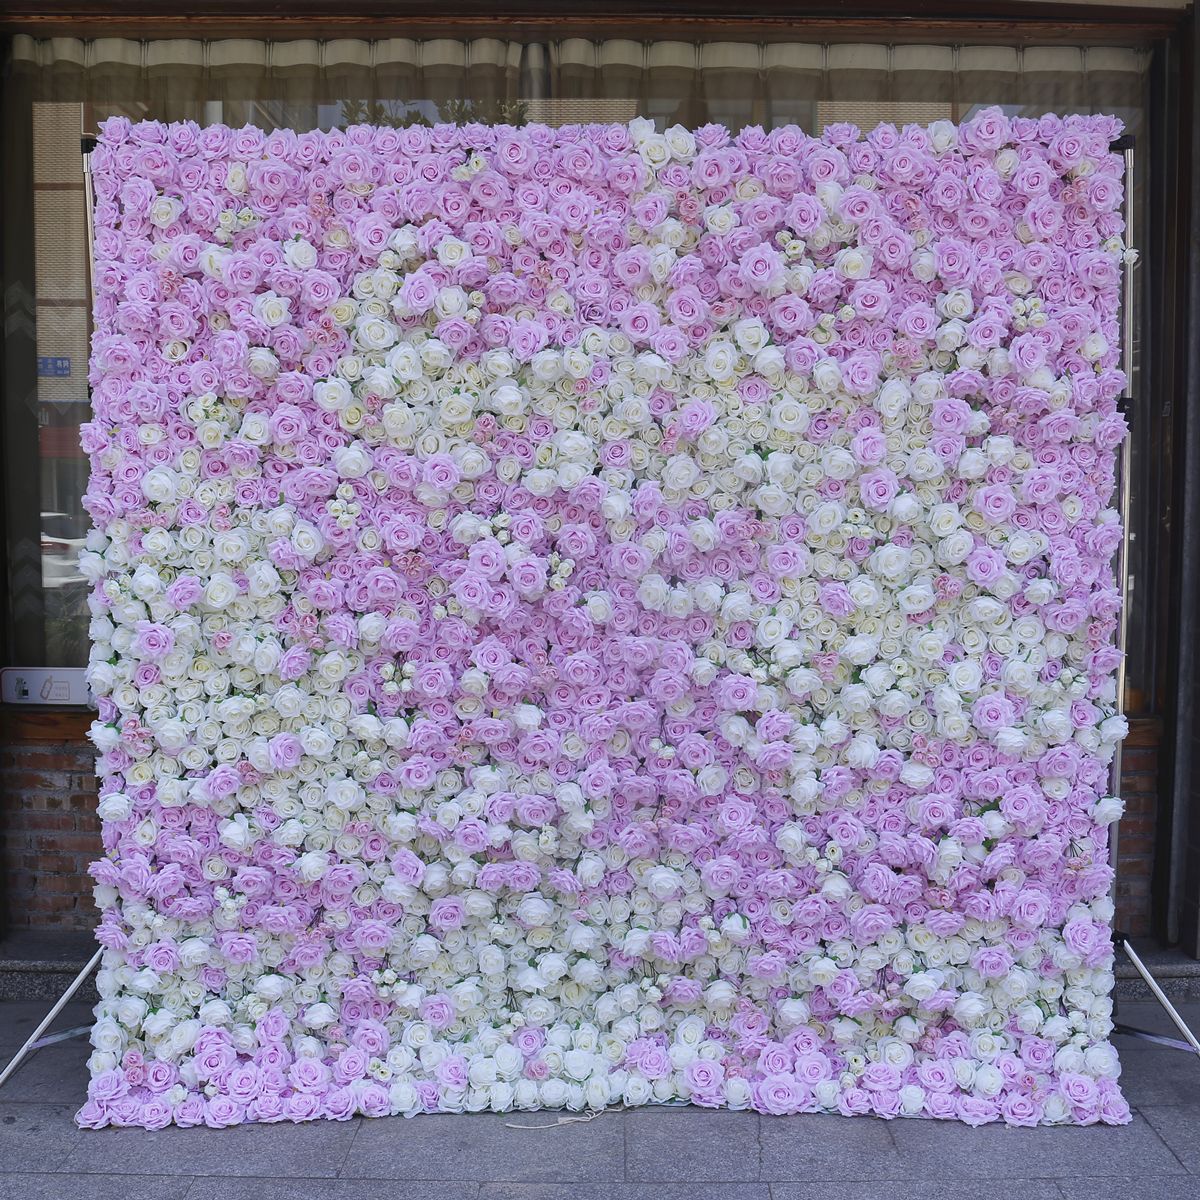 Simulearre florale muorre mei stof eftergrûn eftergrûn muorre 5D trijedimensjonale brulloft dekoraasje brulloft dekoraasje rekwisieten